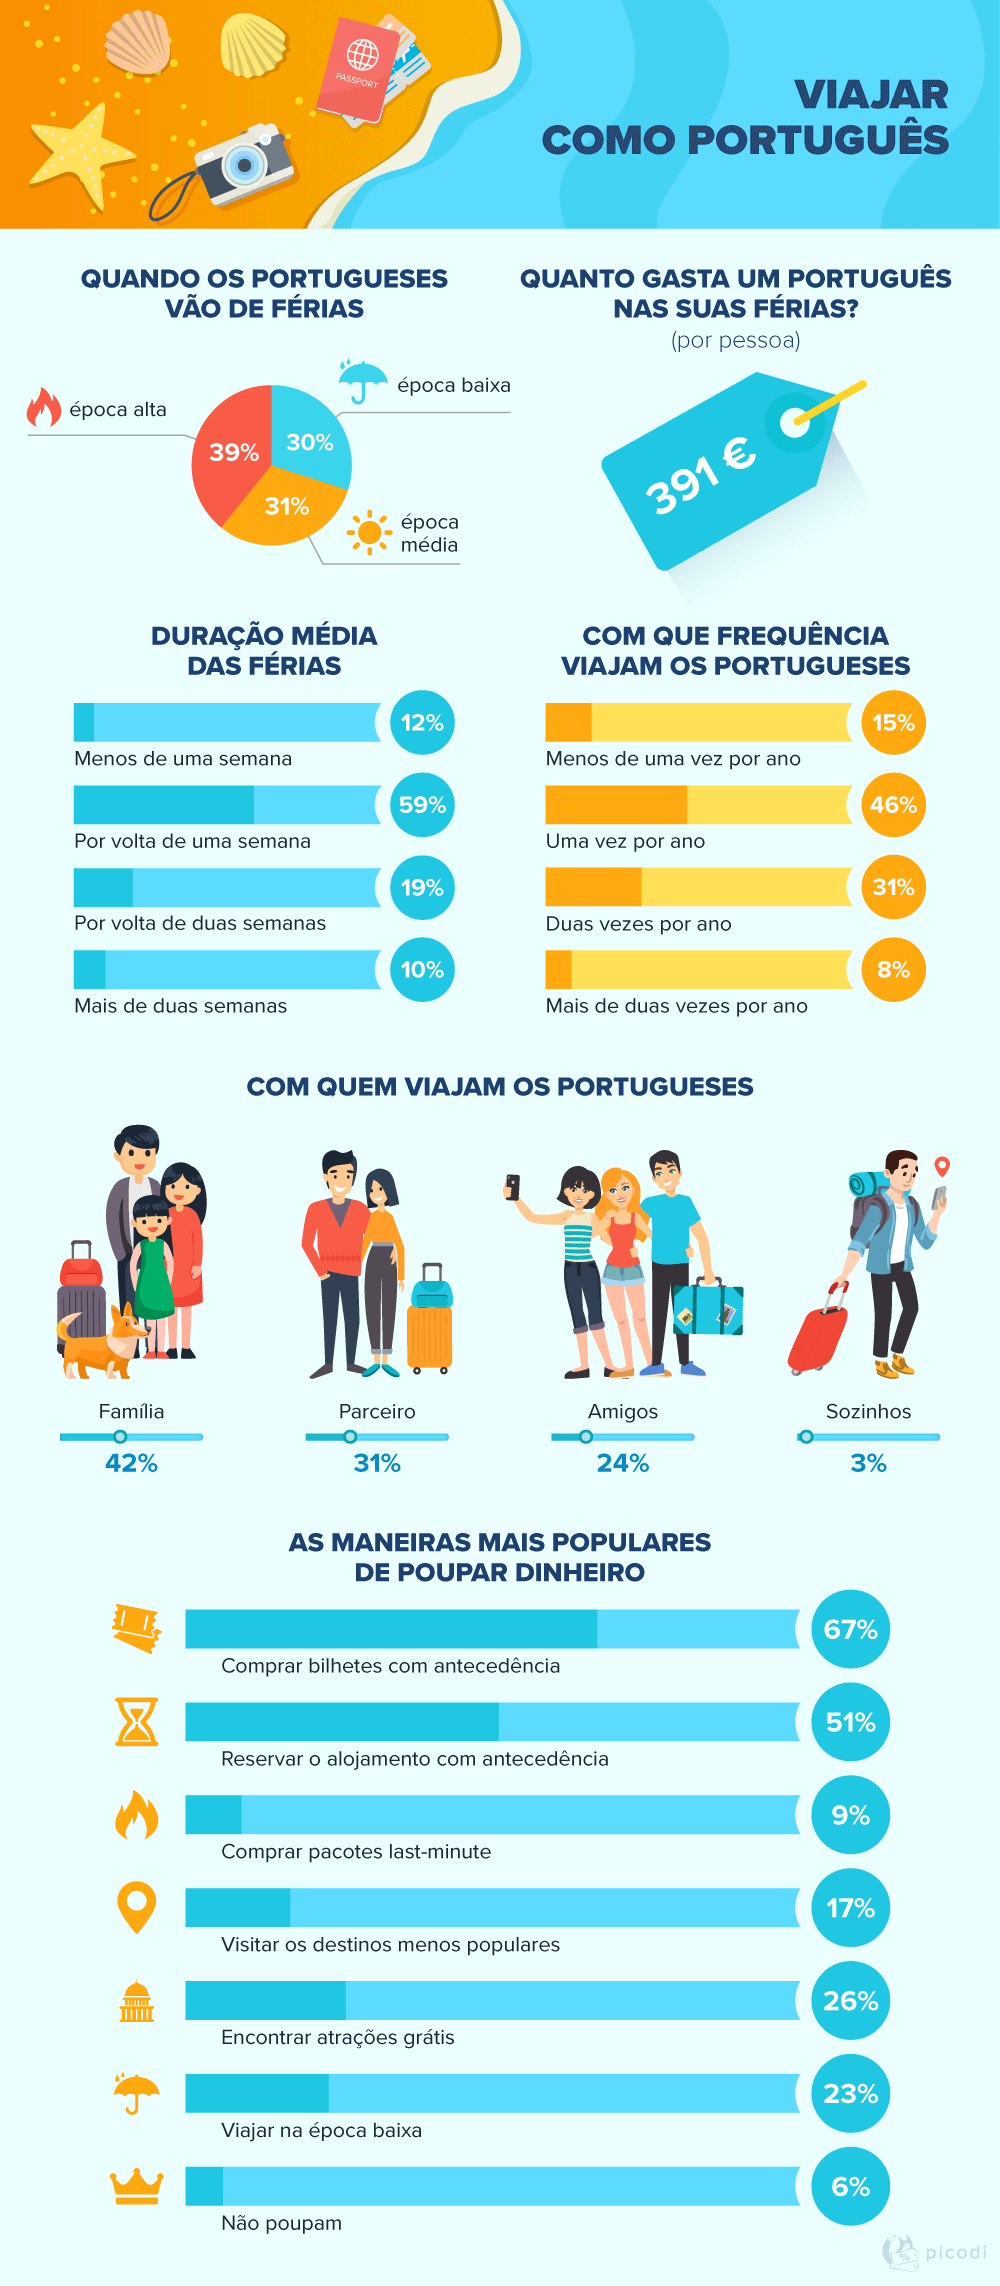 O português gasta quanto nas suas férias? E vai para onde?